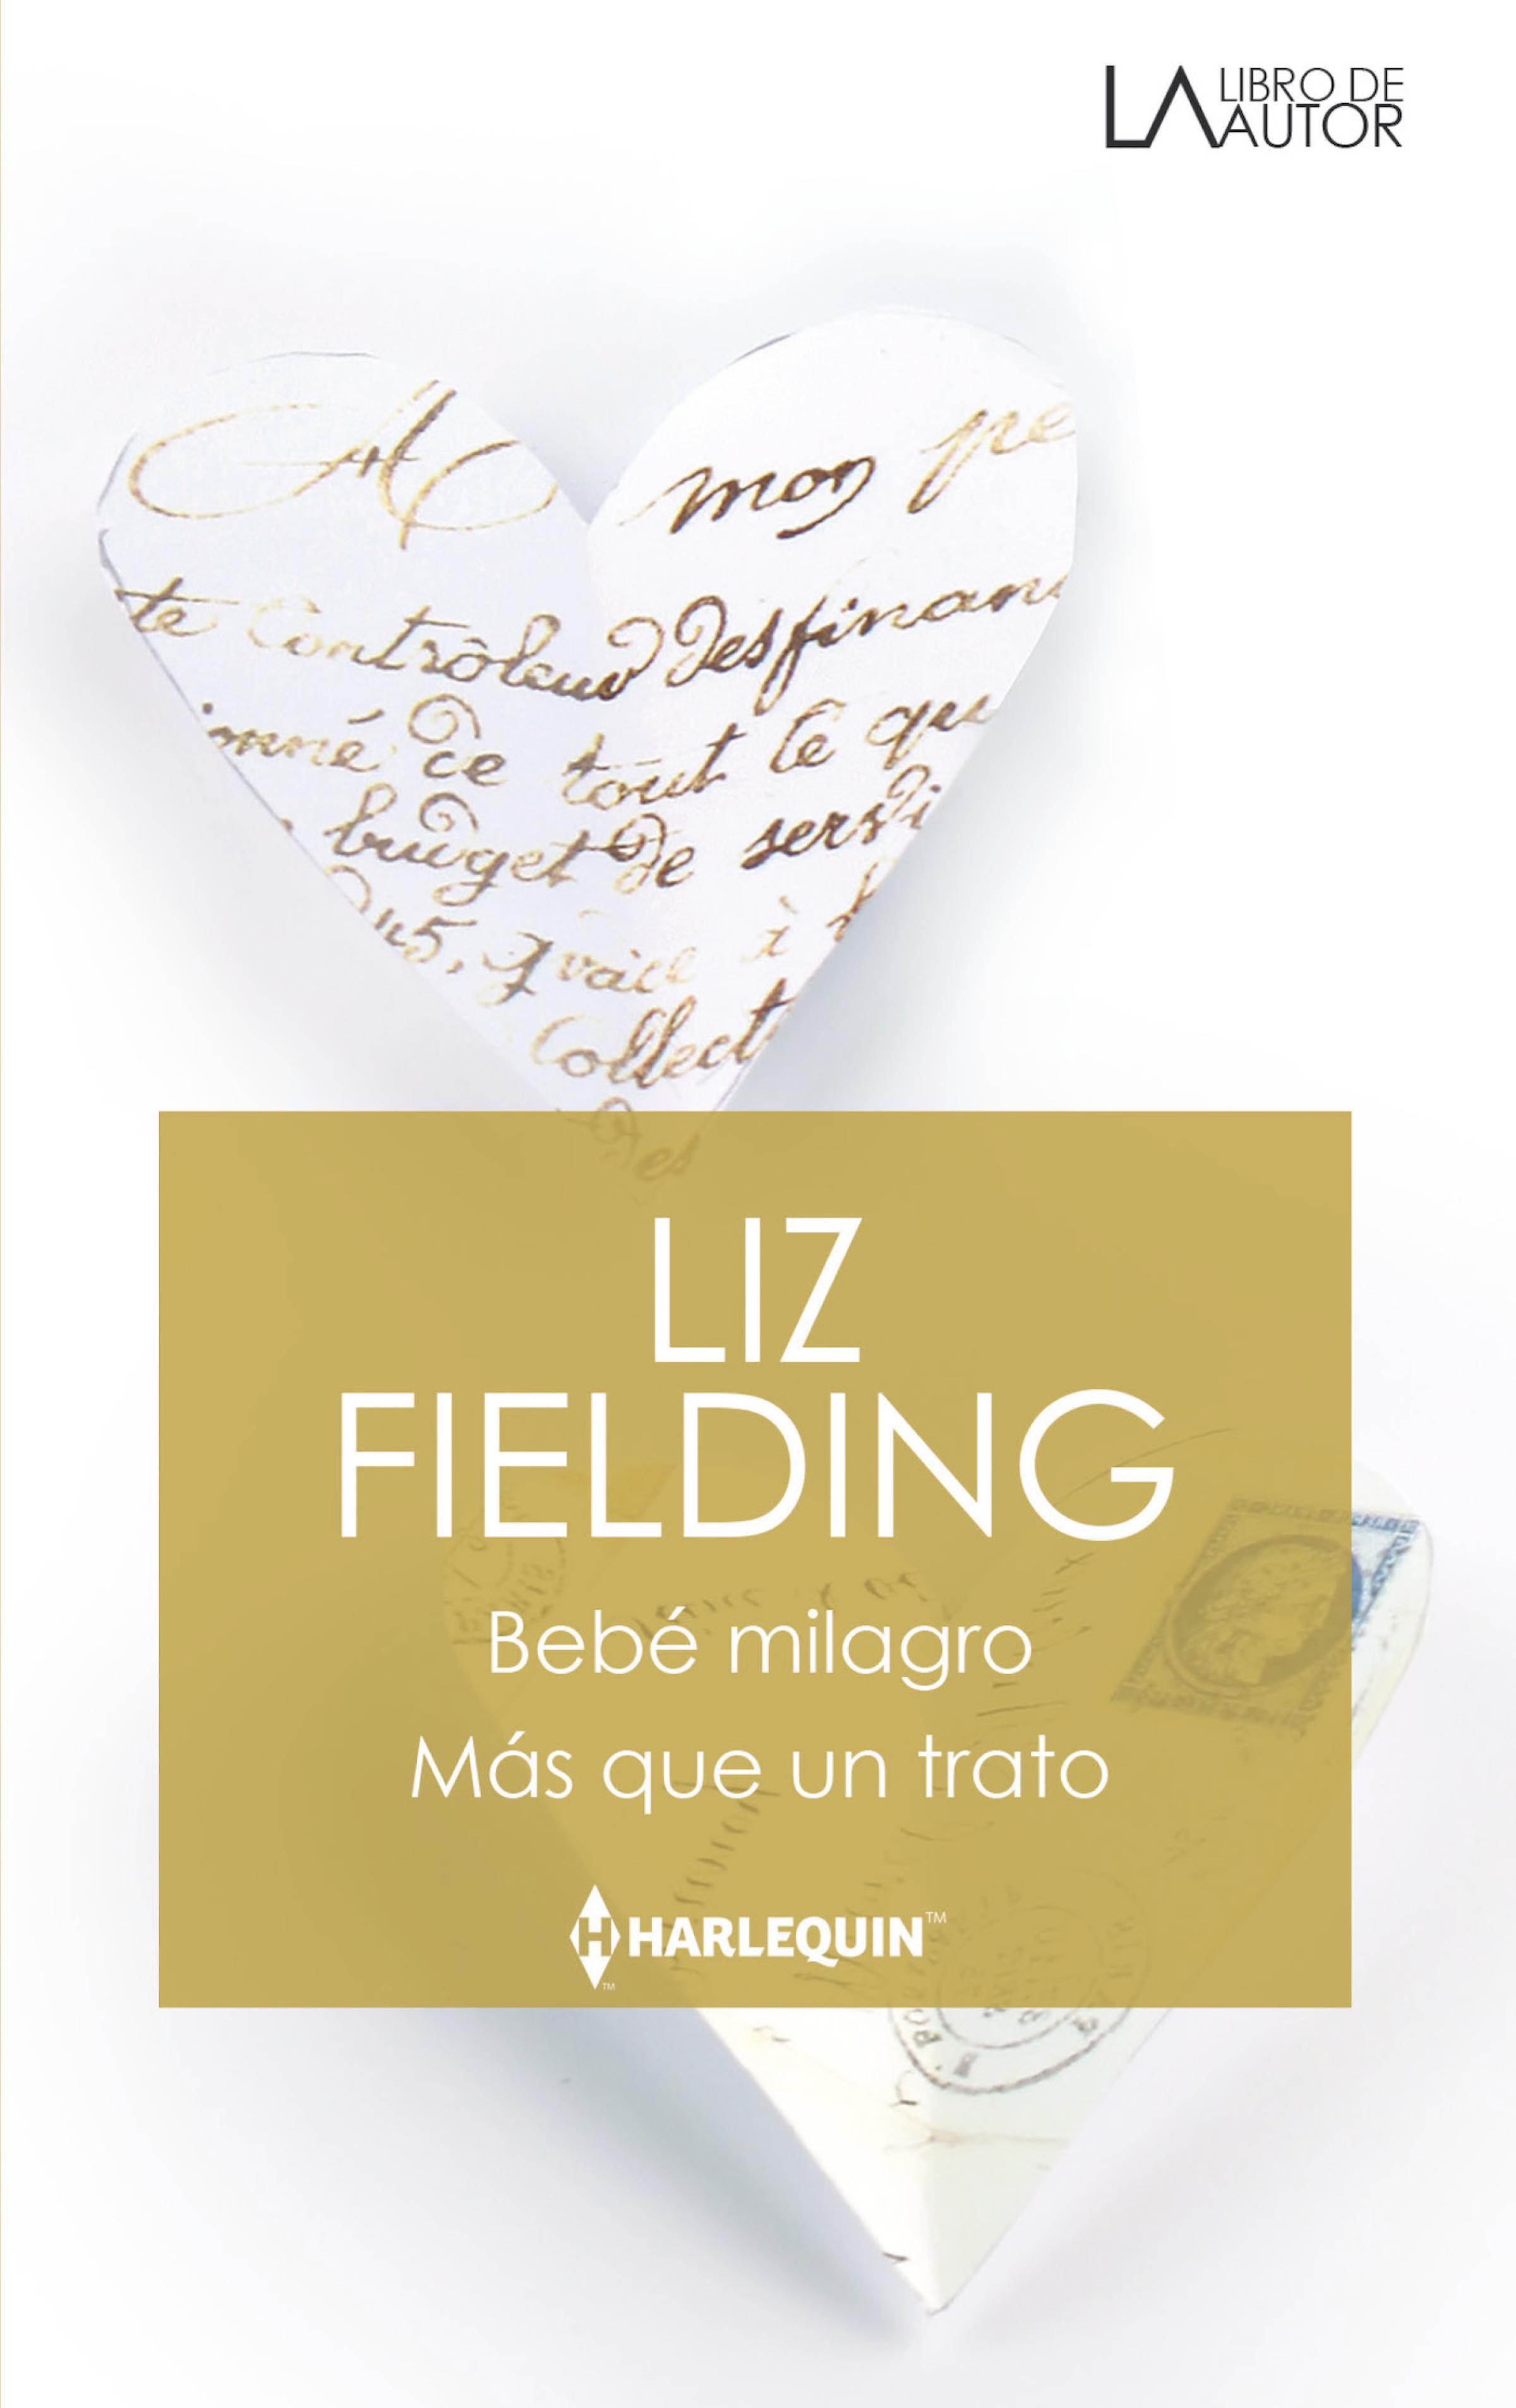 Скачать Bebé milagro - Más que un trato - Liz Fielding